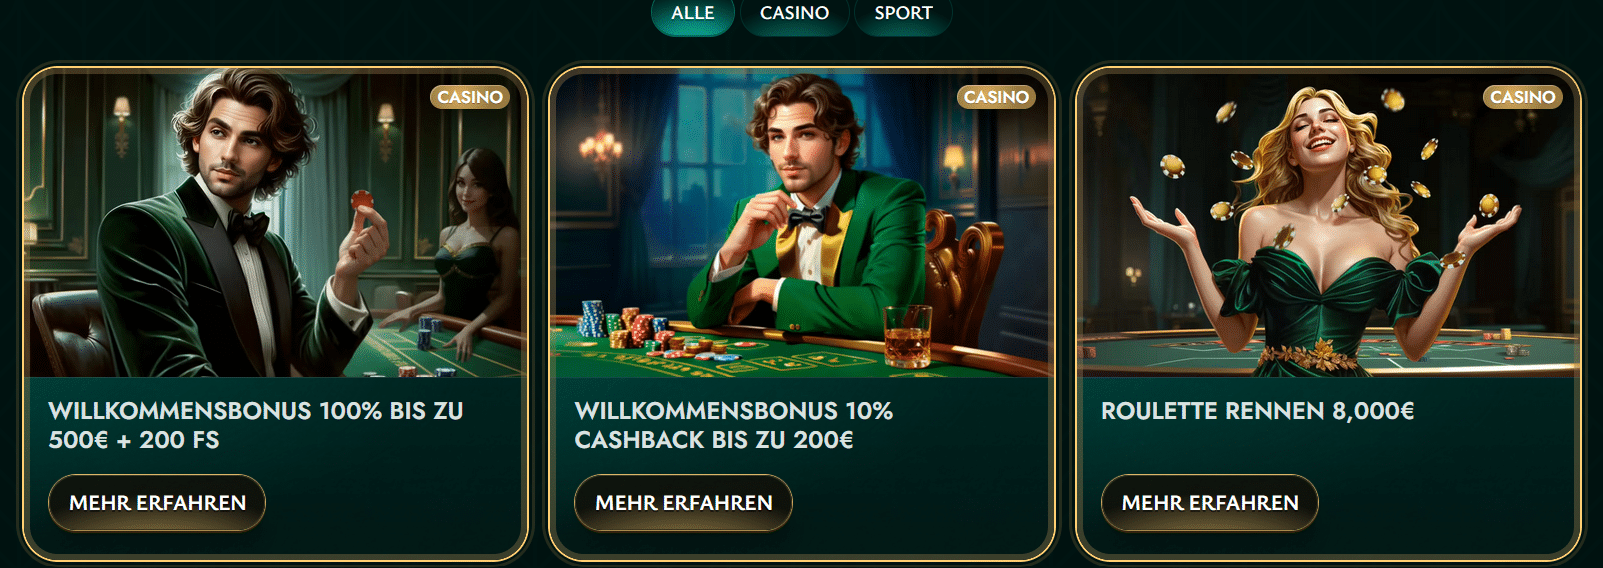 Cashed Casino Bonus